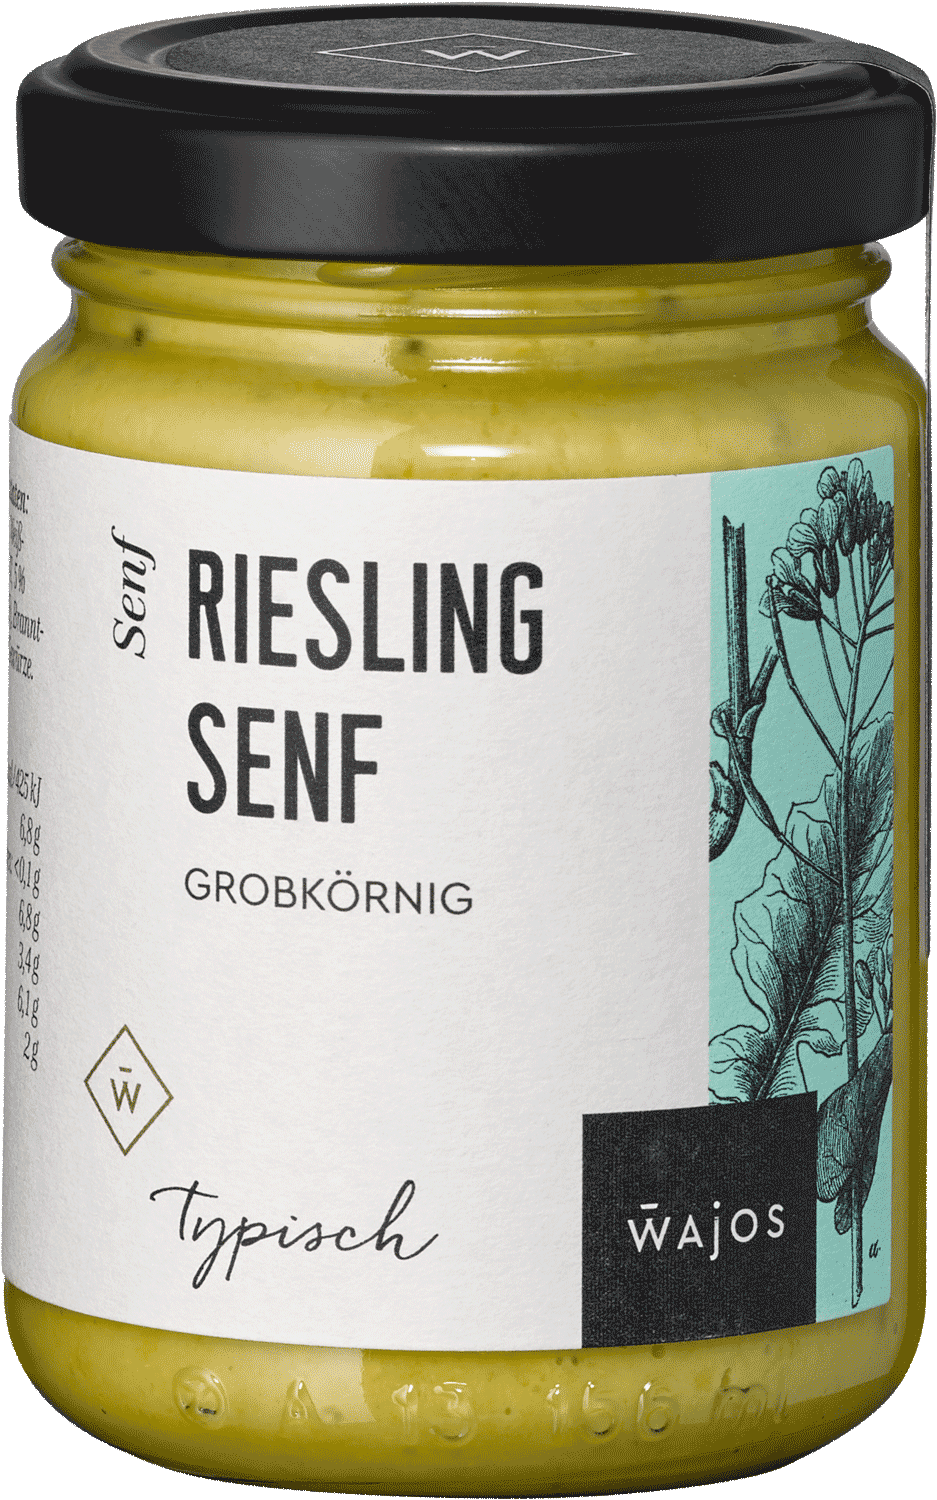 Riesling Senf 140ml (alc. 0,8% vol)